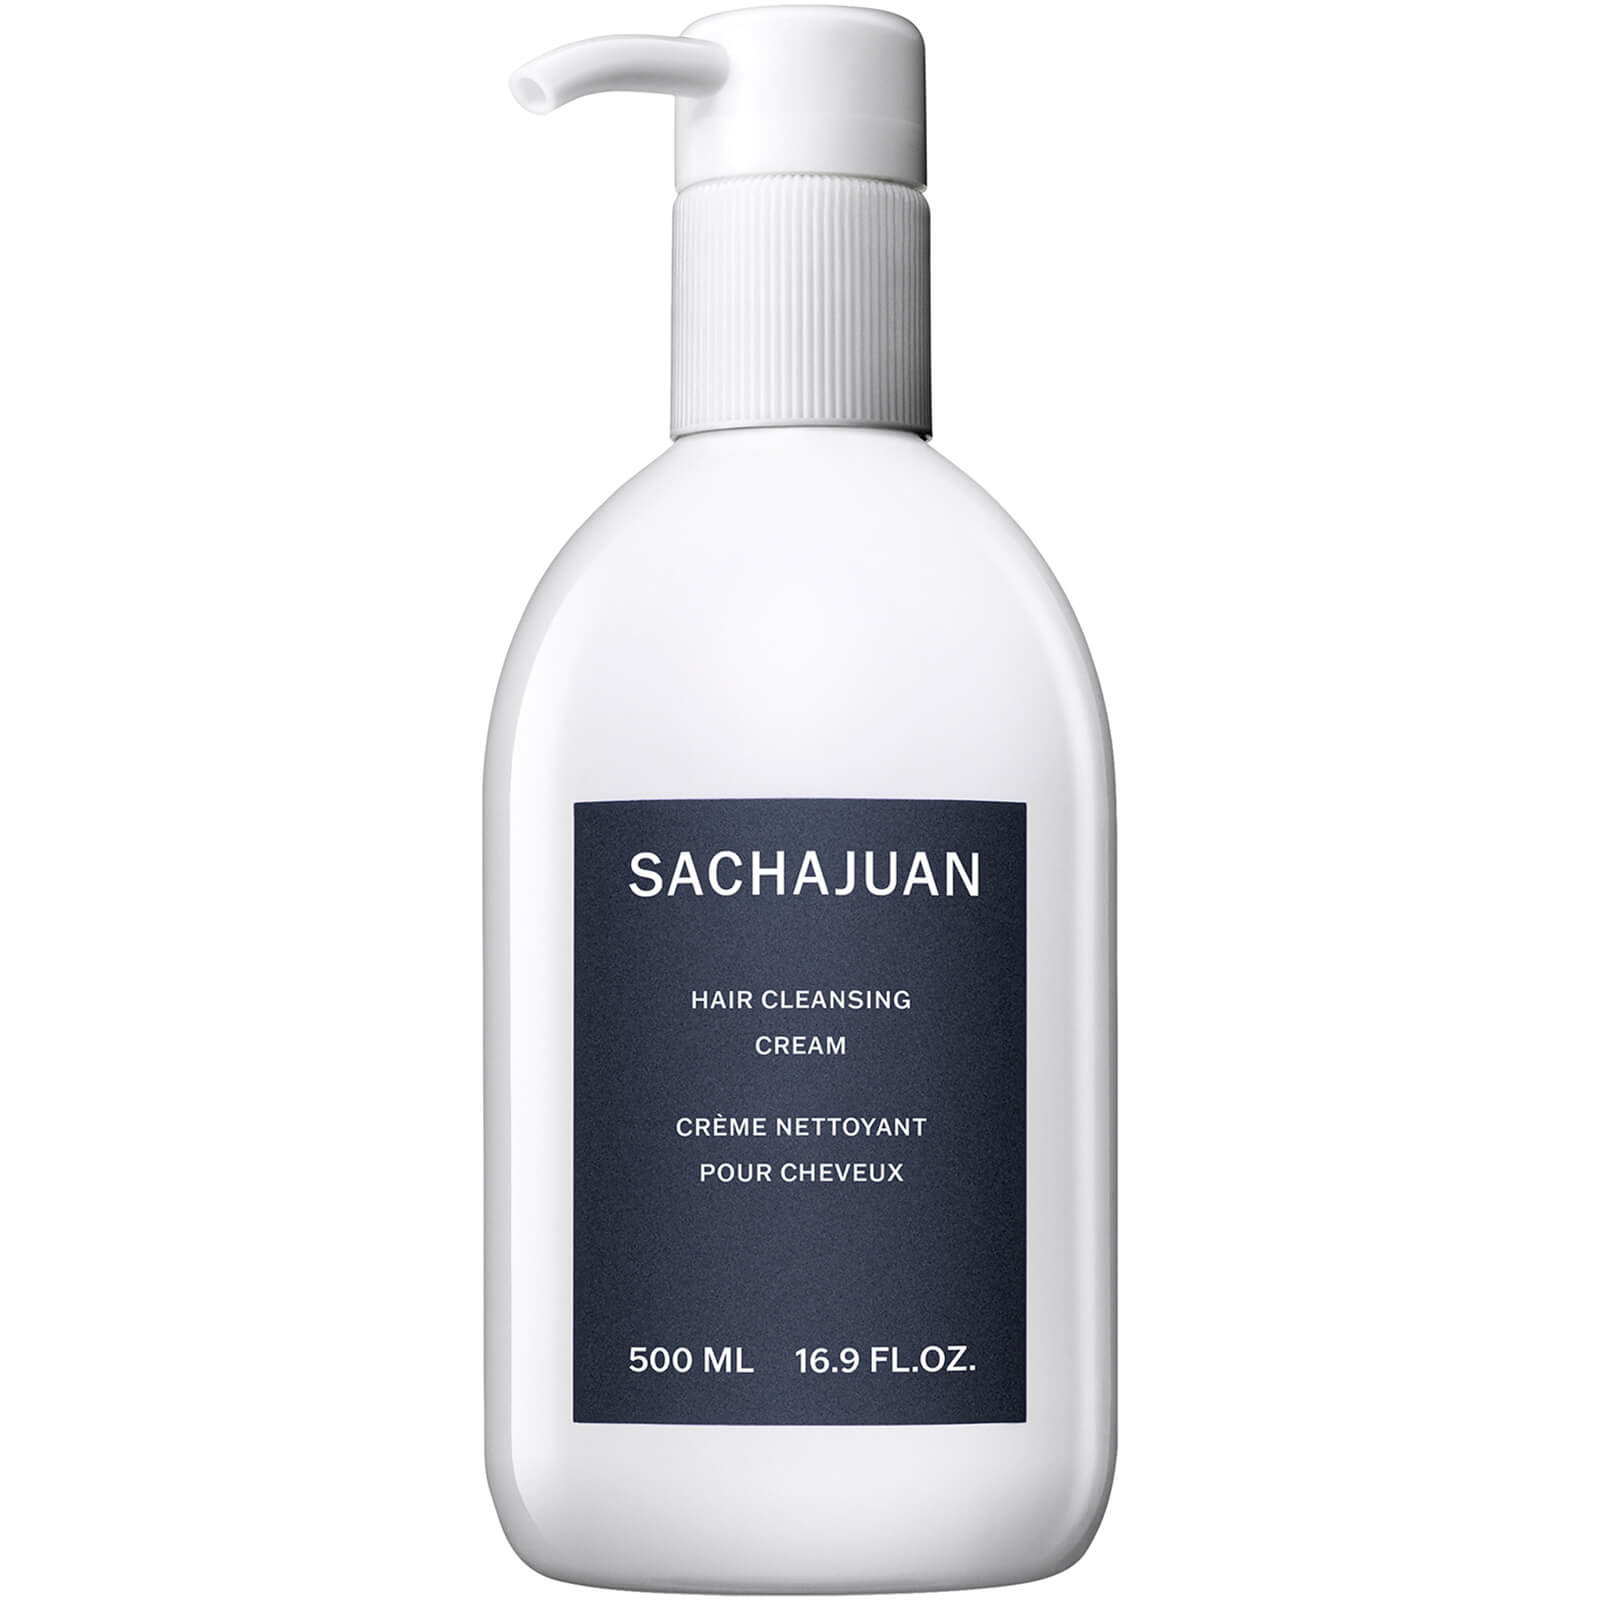 Sachajuan Hair Cleansing Cream 500ml product